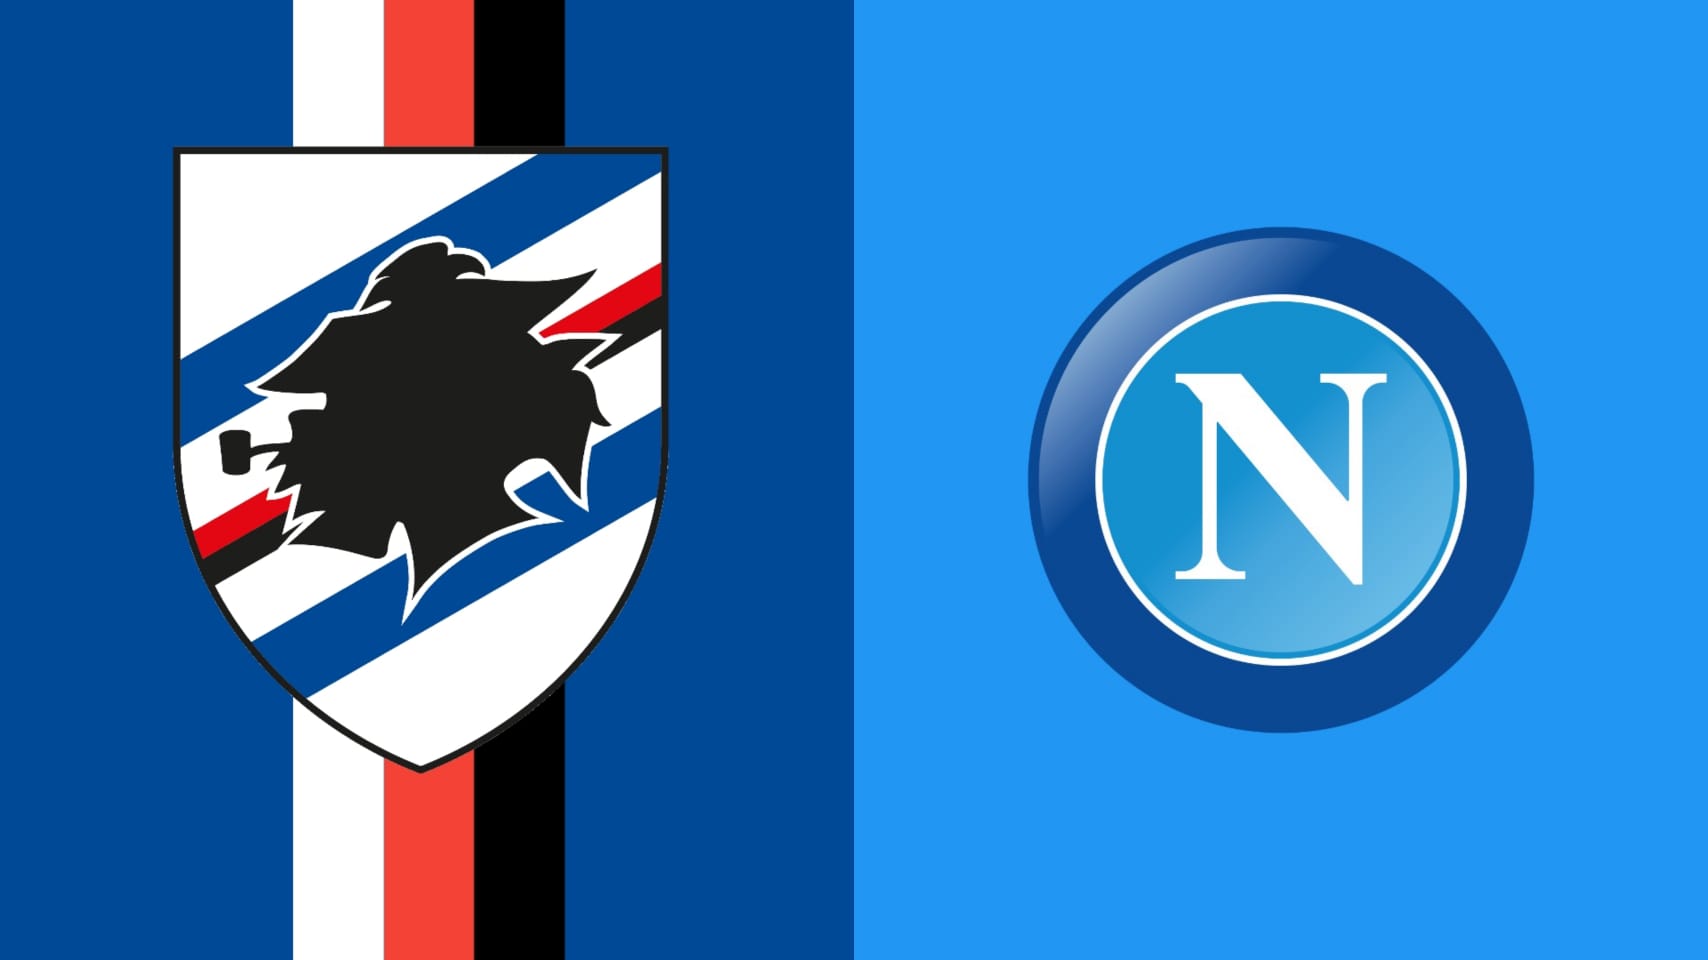 Sampdoria vs Napoli